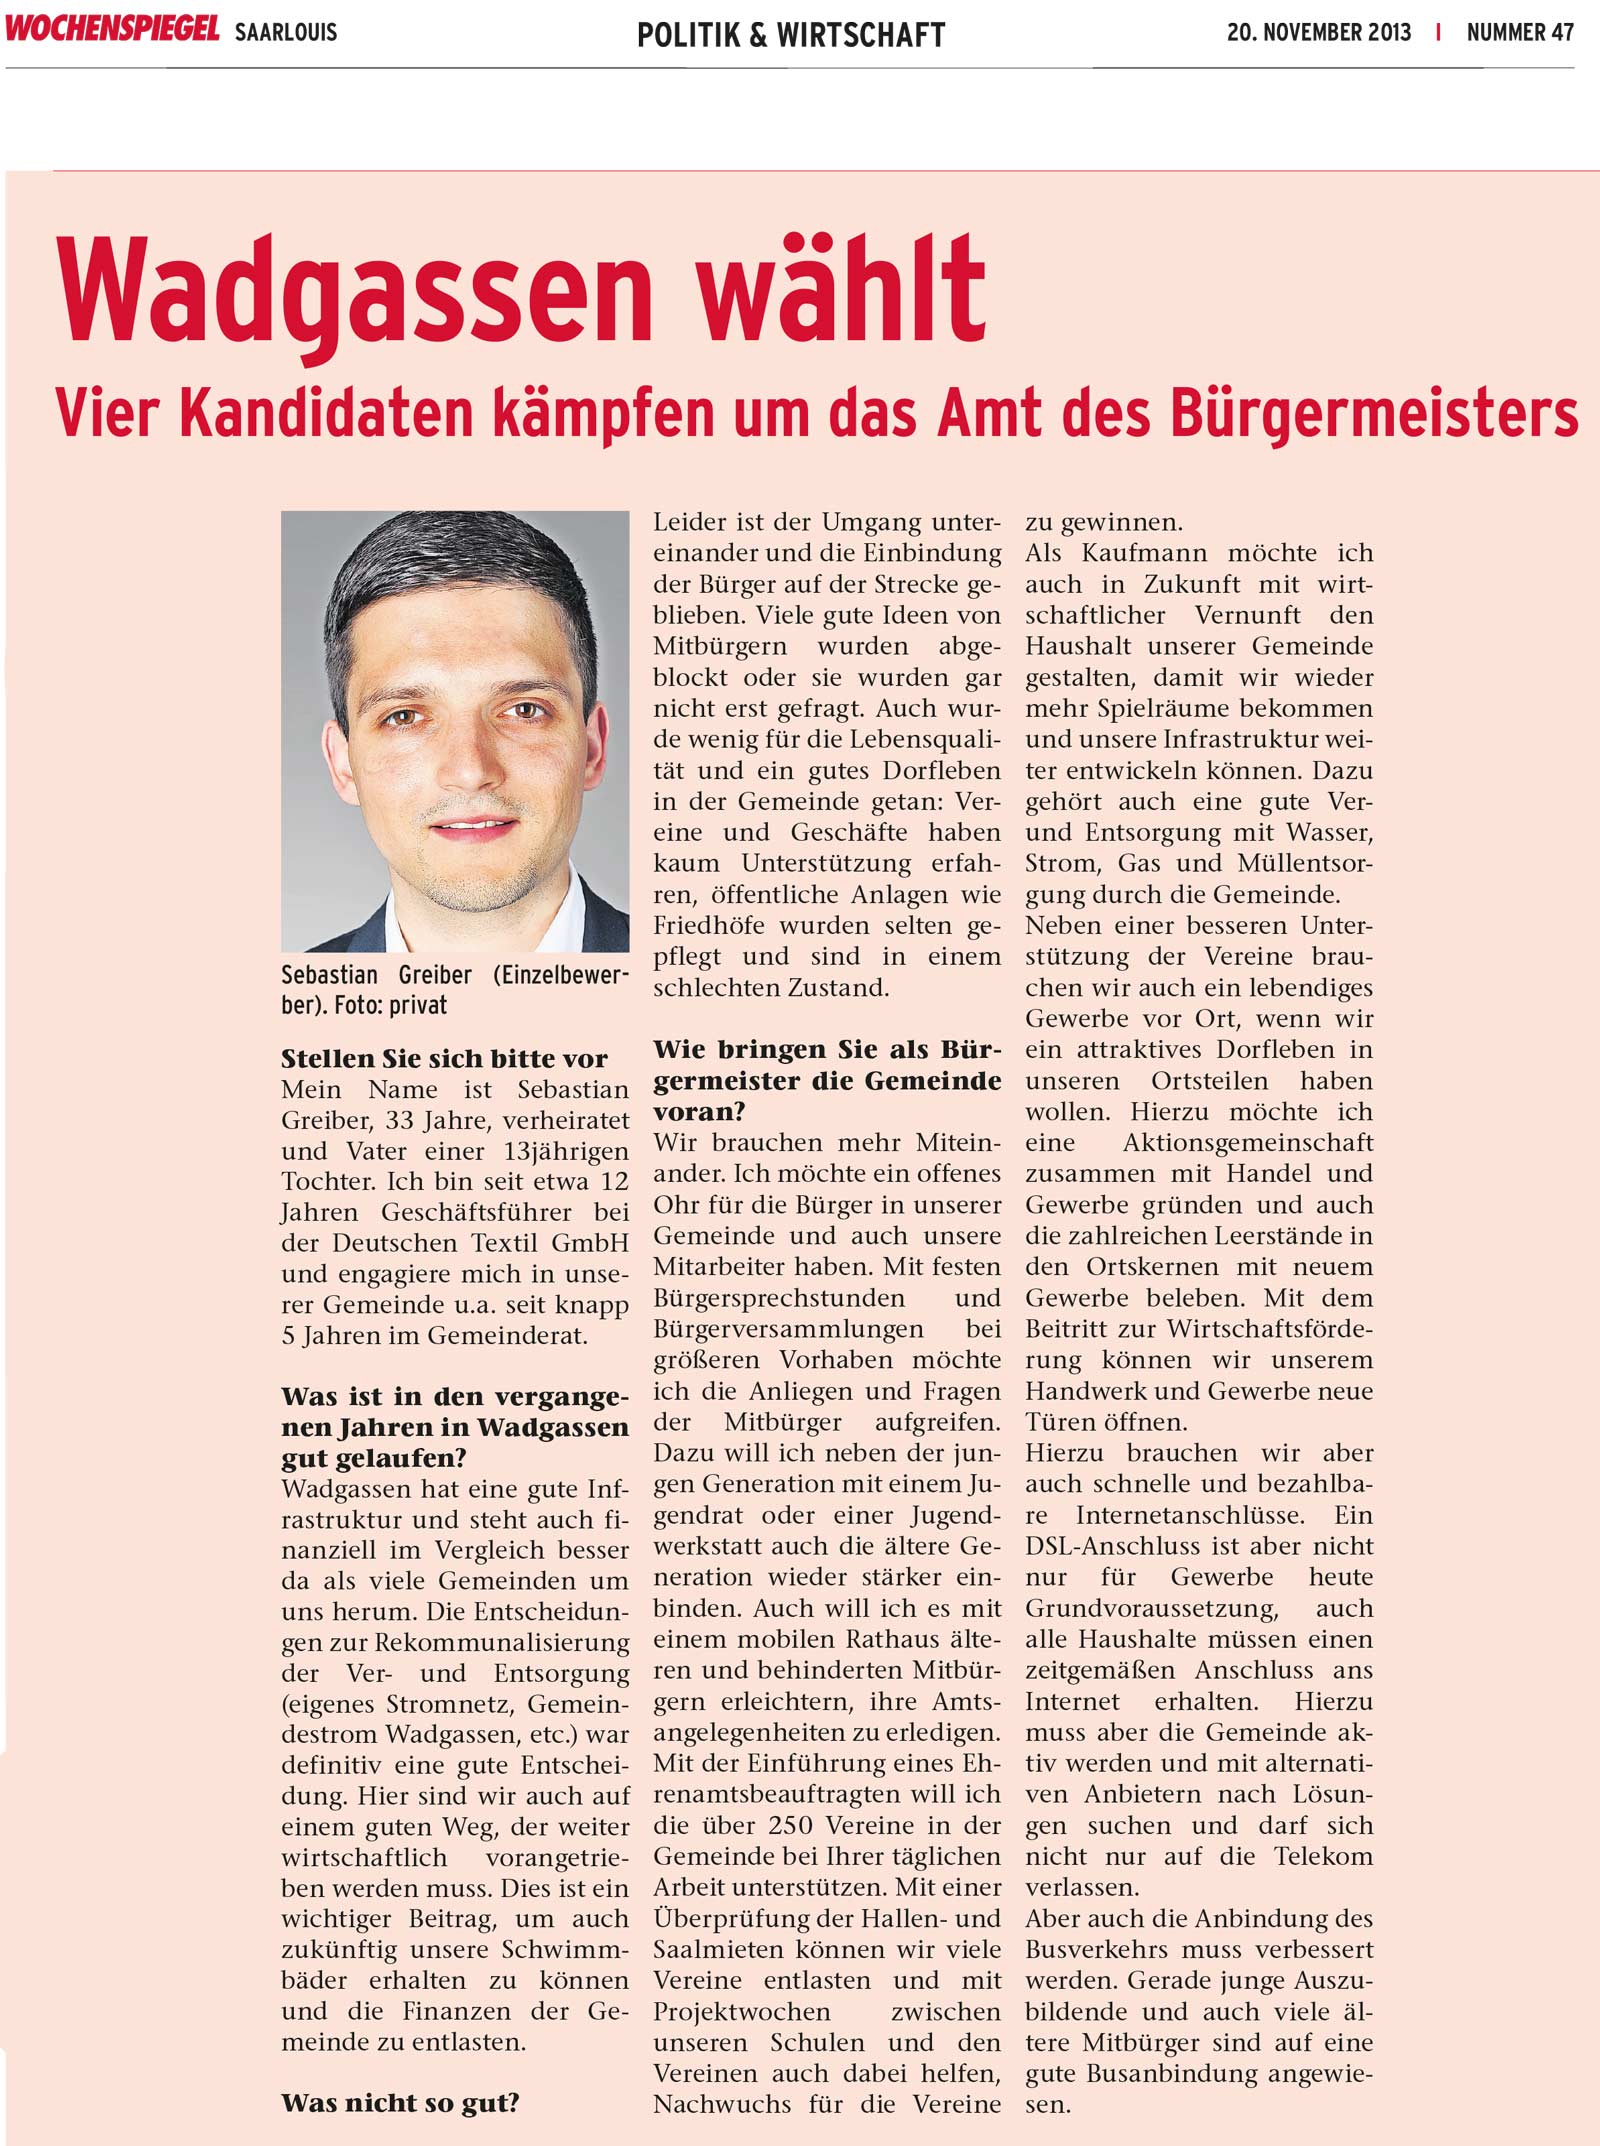 Sebastian Greiber im Interview im Wochenspiegel